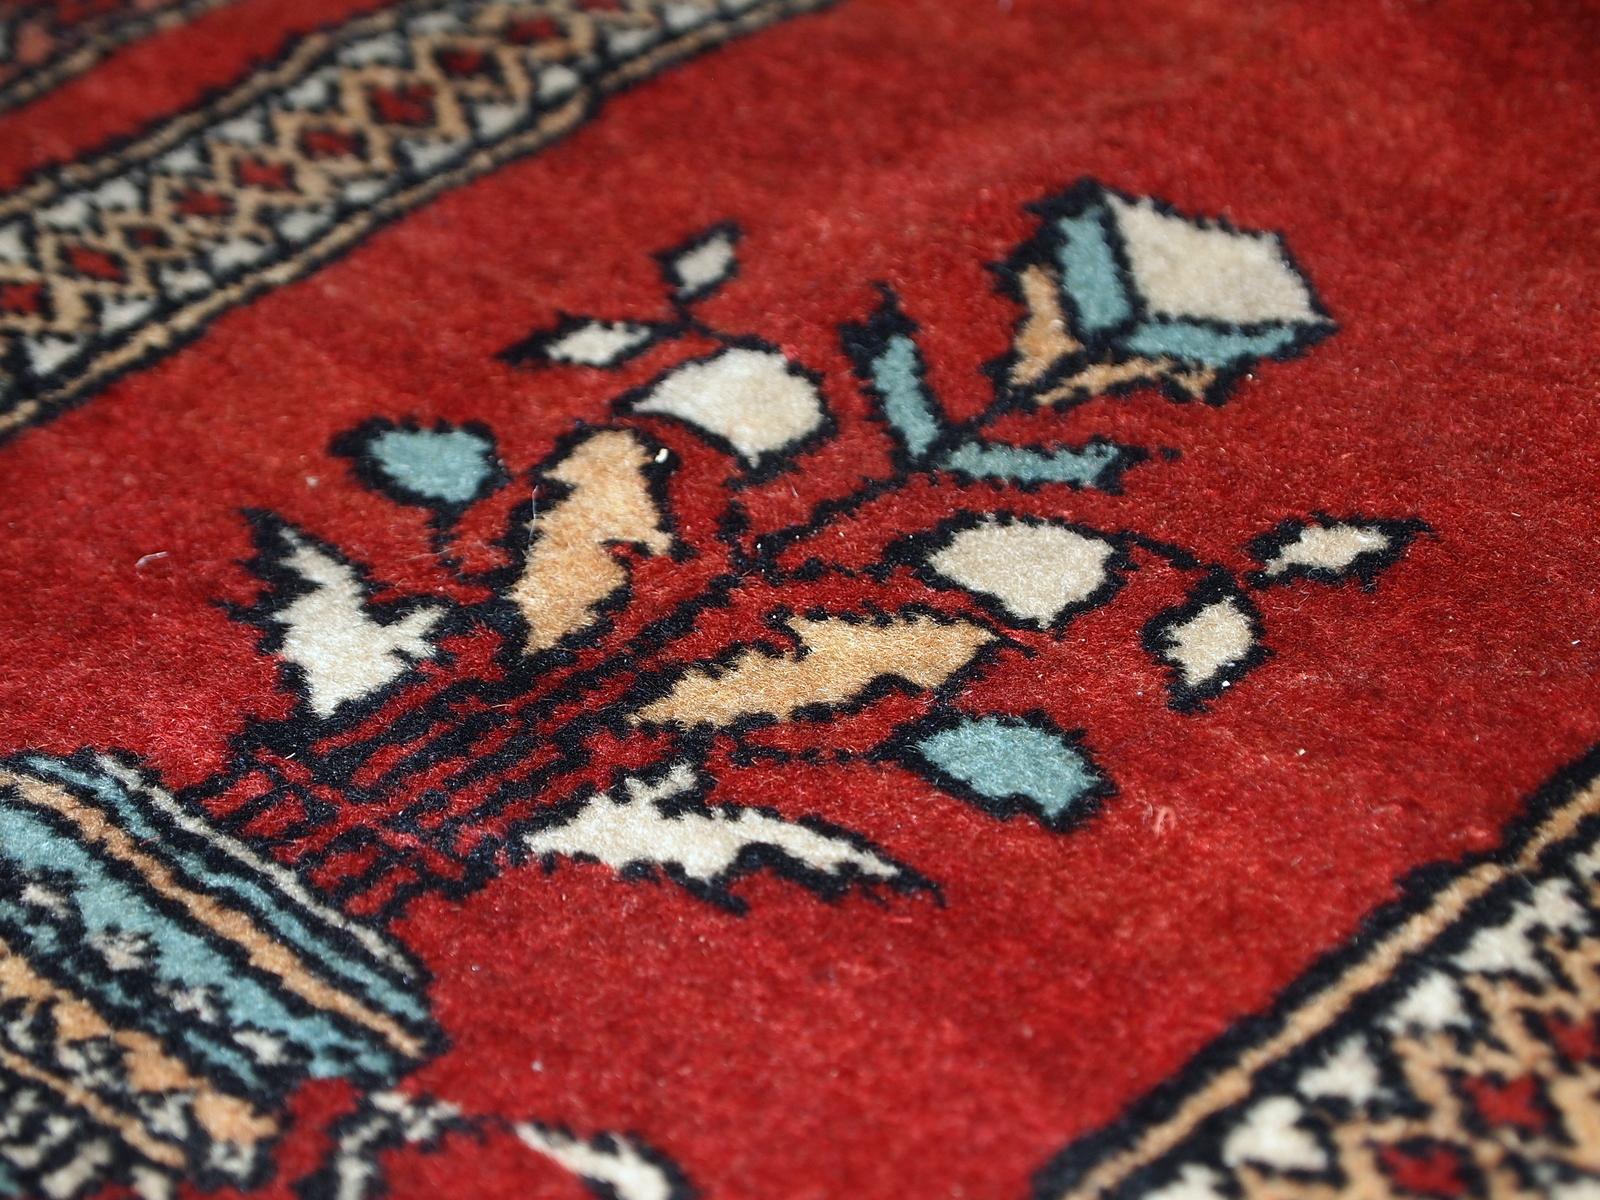 Handgefertigter türkischer Konya Gebetsteppich in gutem Originalzustand. Leuchtendes Rot und schöner Zierrand.

